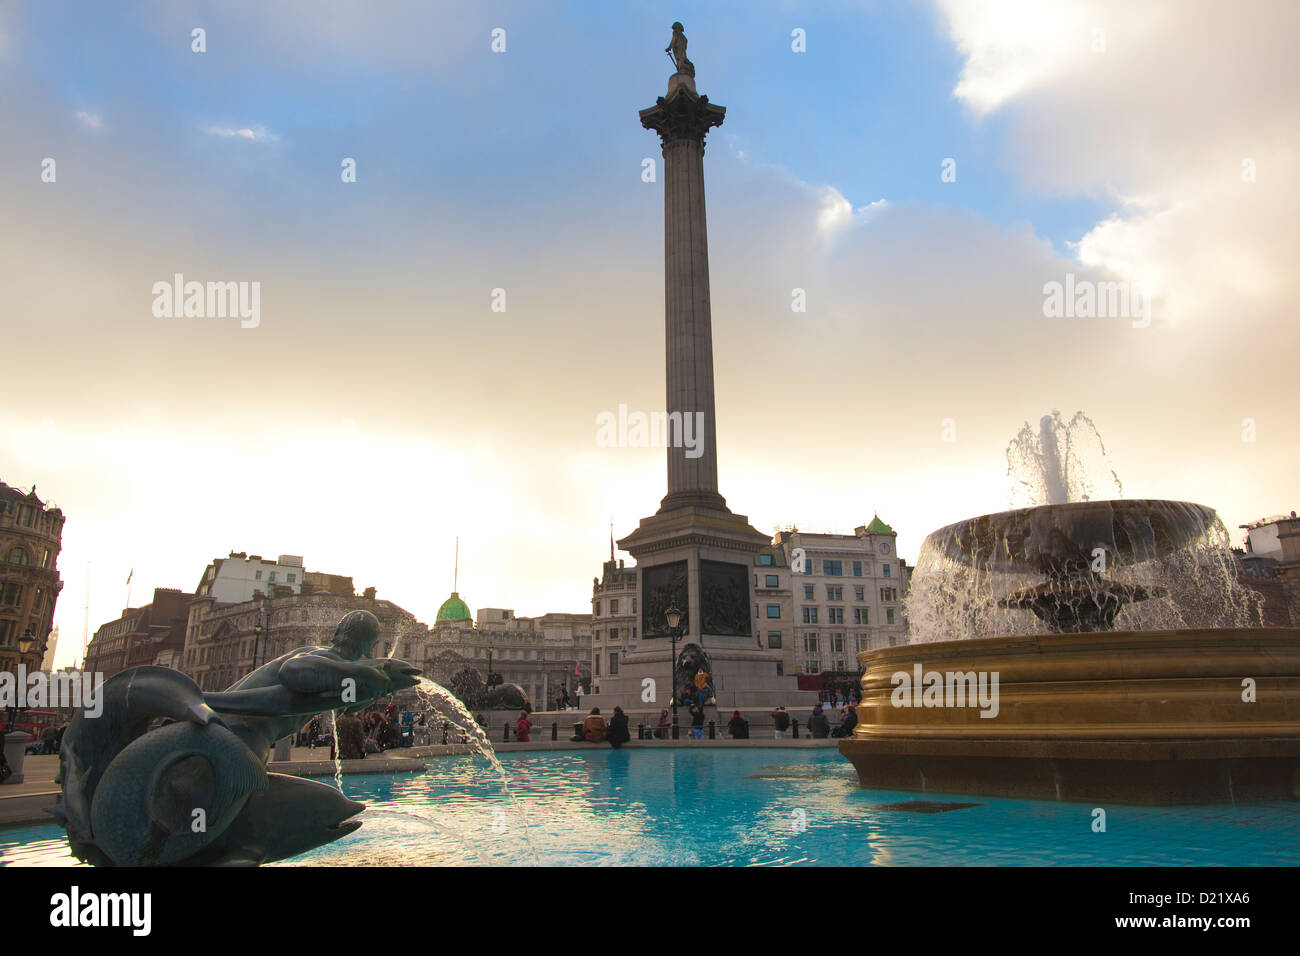 Coloumn Nelson debout au-dessus de l'une des fontaines à Trafalgar Square, Londres, Angleterre, Royaume-Uni Banque D'Images